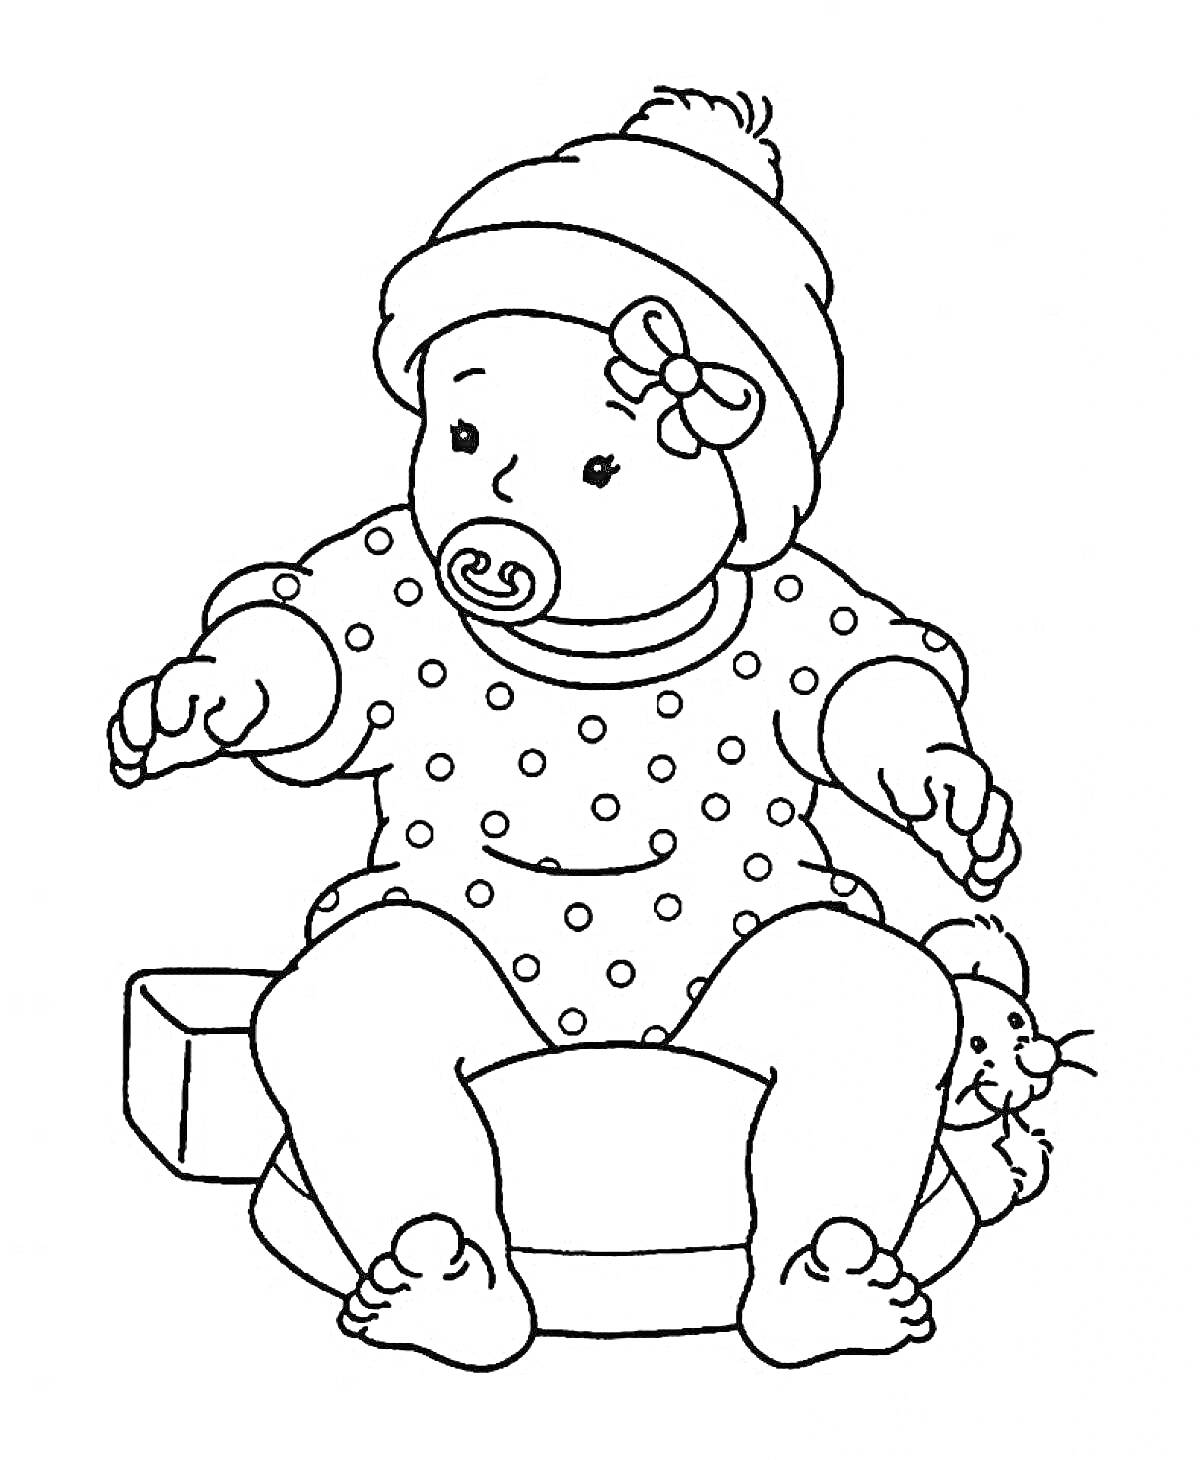 Кукла в шапке с бантиком, соской, в комбинезоне в горошек, сидящая с игрушечной мышкой, кубиком и подушкой